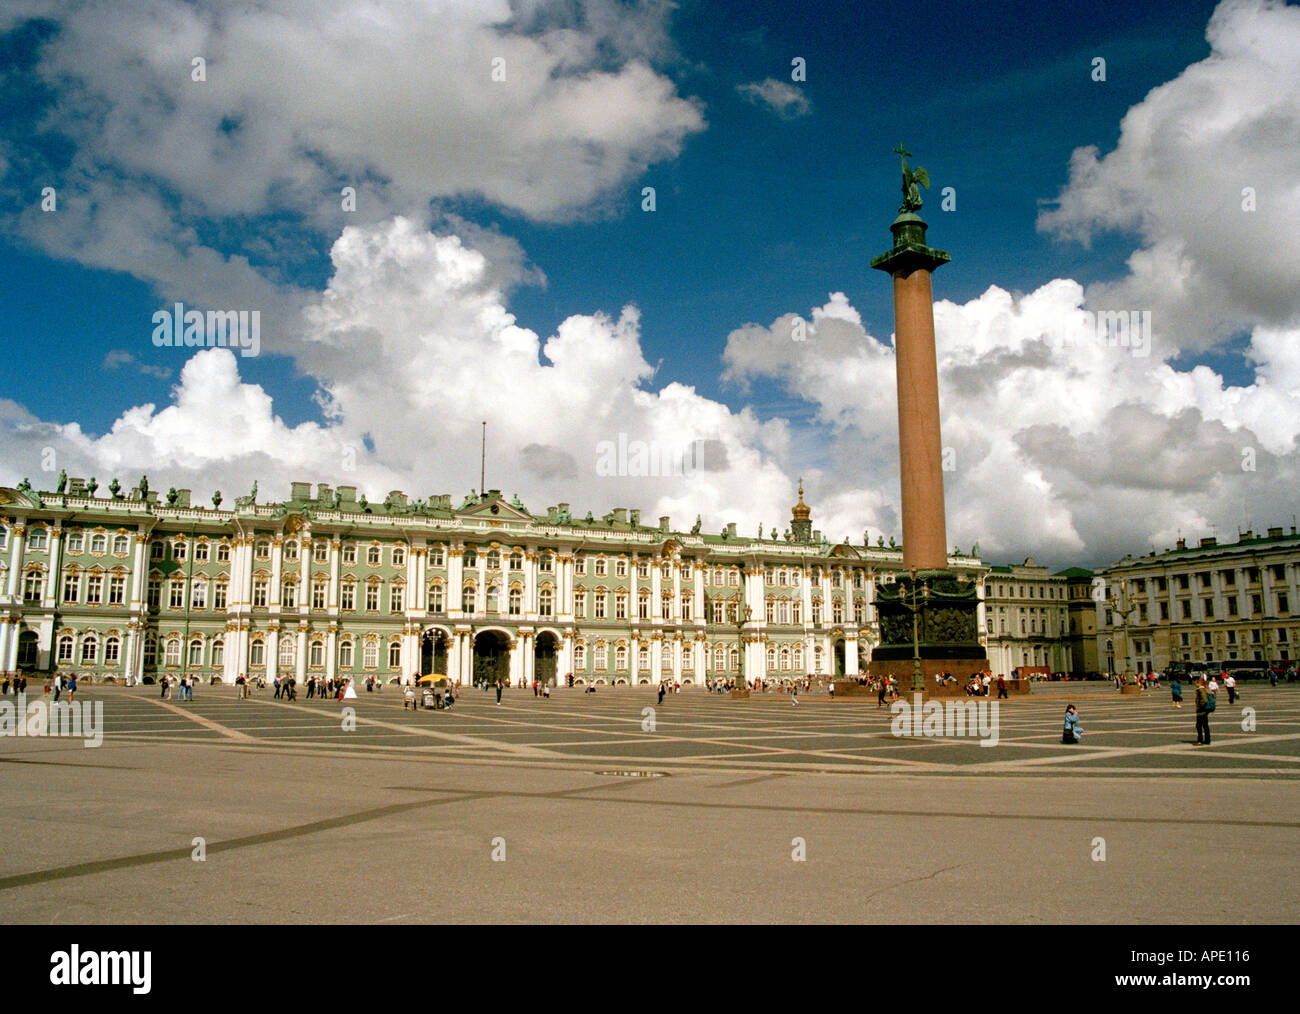 La place du palais et l'Ermitage, Saint-Pétersbourg, Russie Banque D'Images